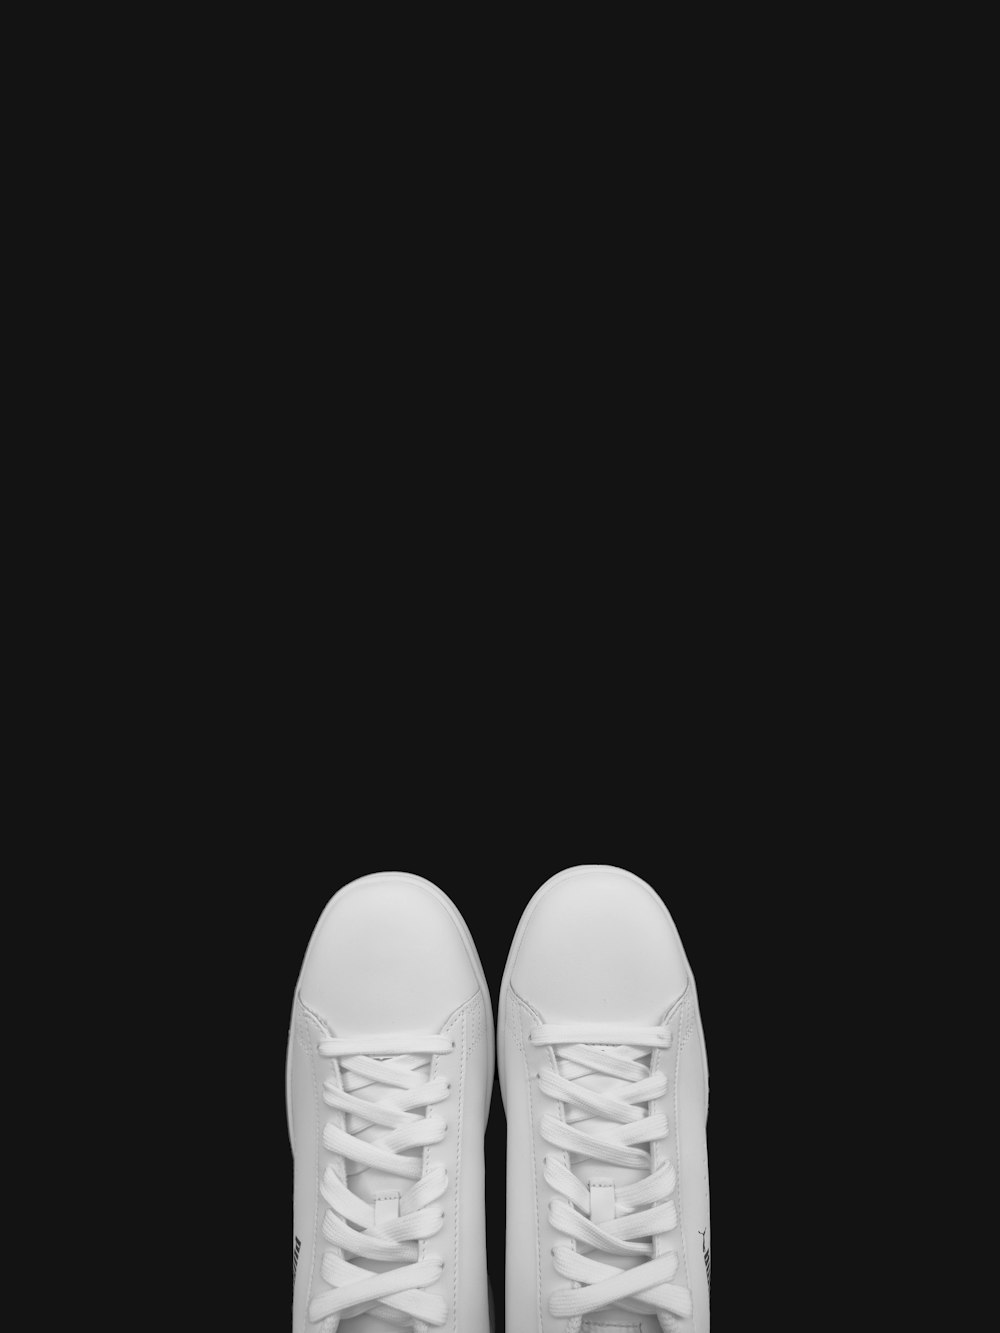 persona con zapatos de cuero blanco